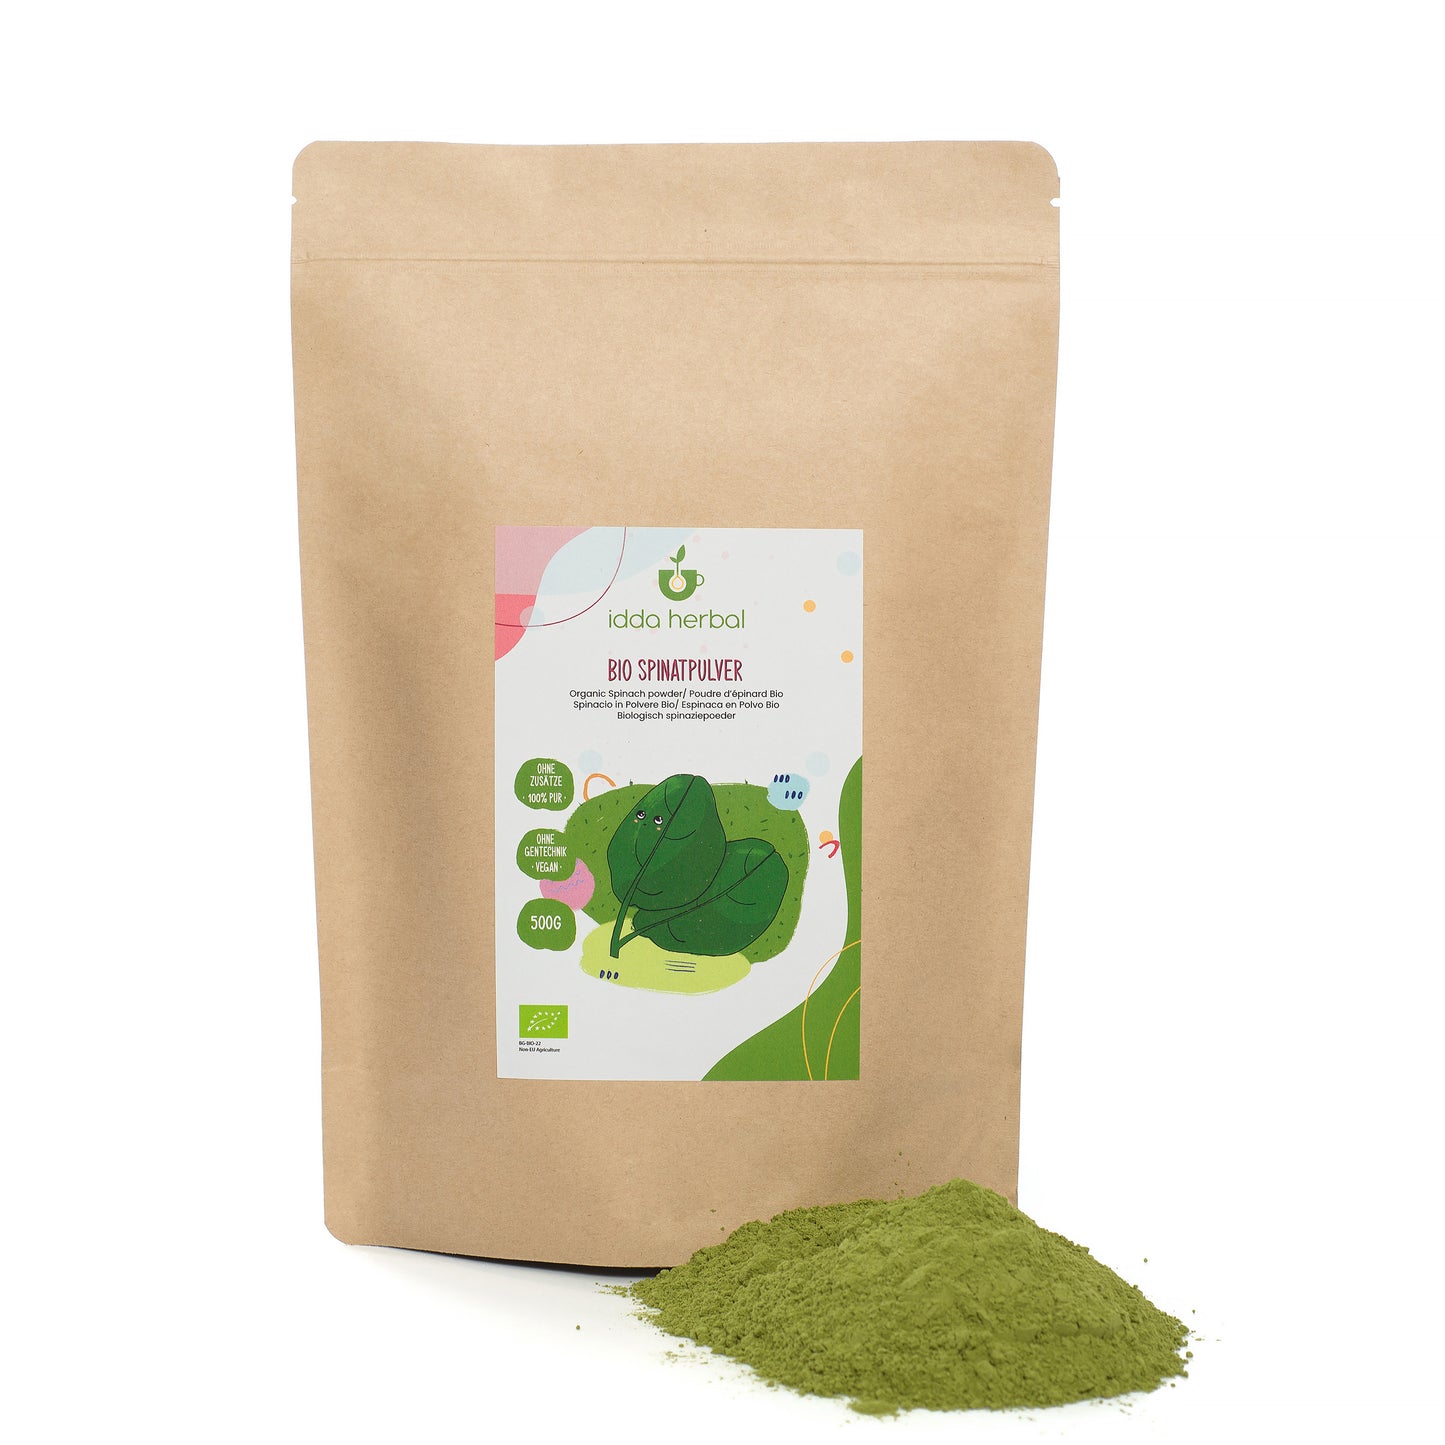 Organic spinach powder